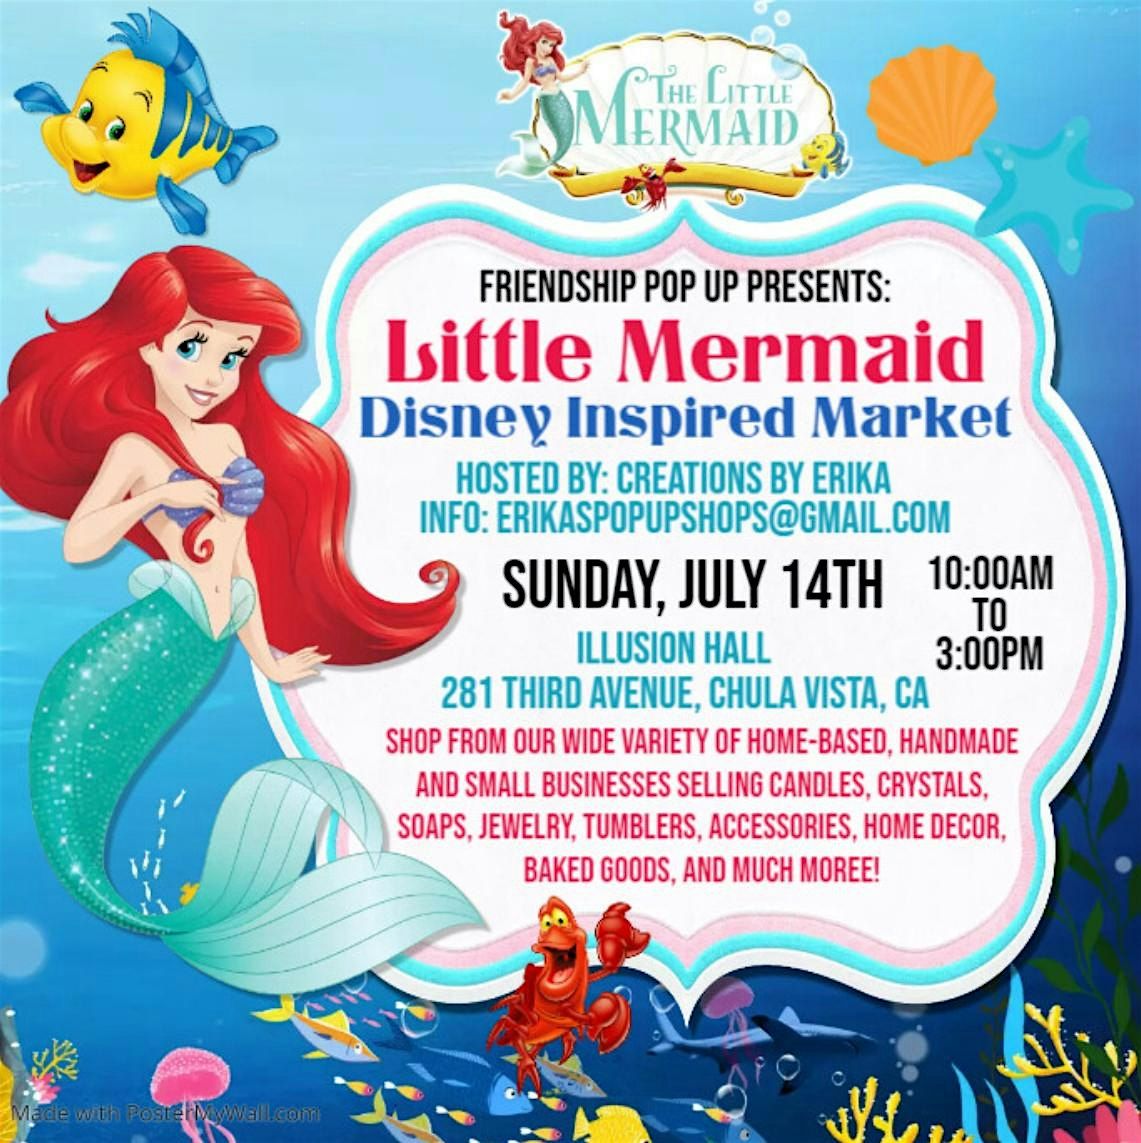 Little Mermaid Disney Inspired Market